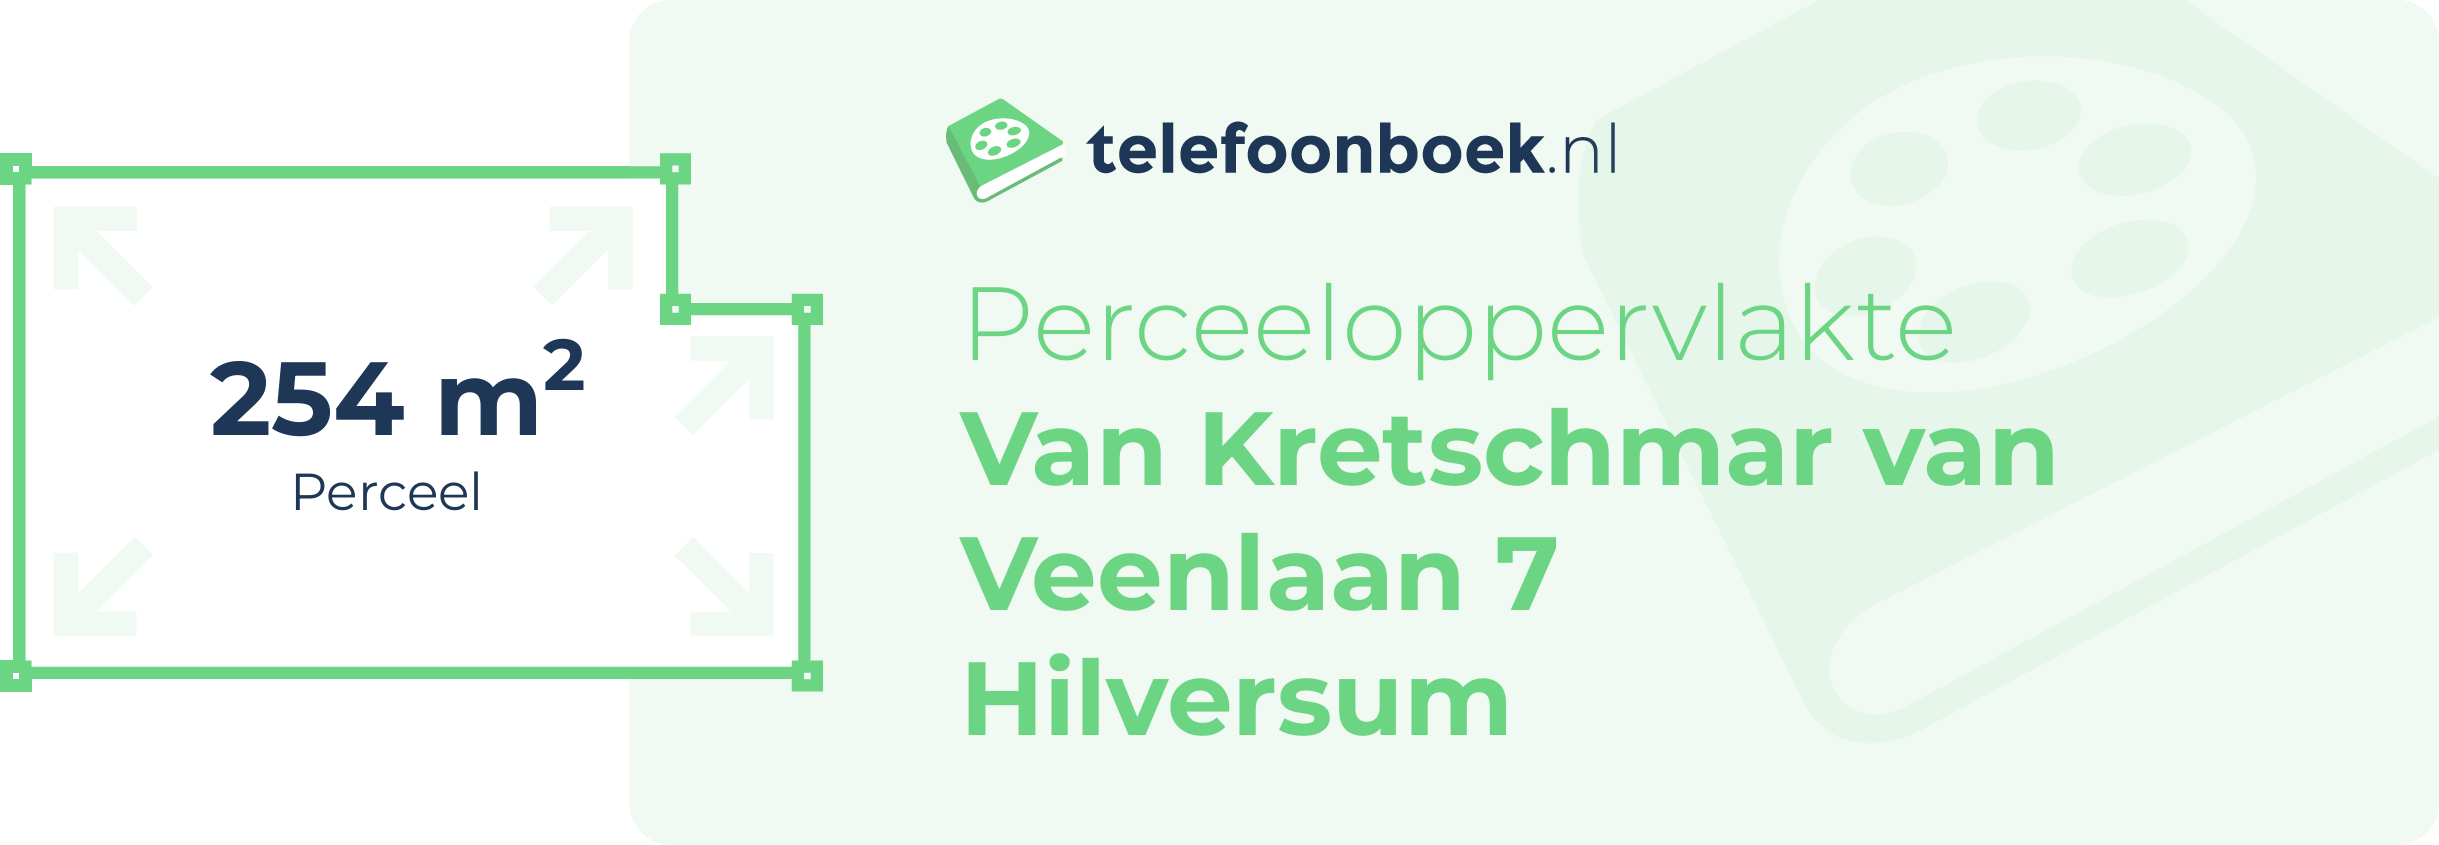 Perceeloppervlakte Van Kretschmar Van Veenlaan 7 Hilversum